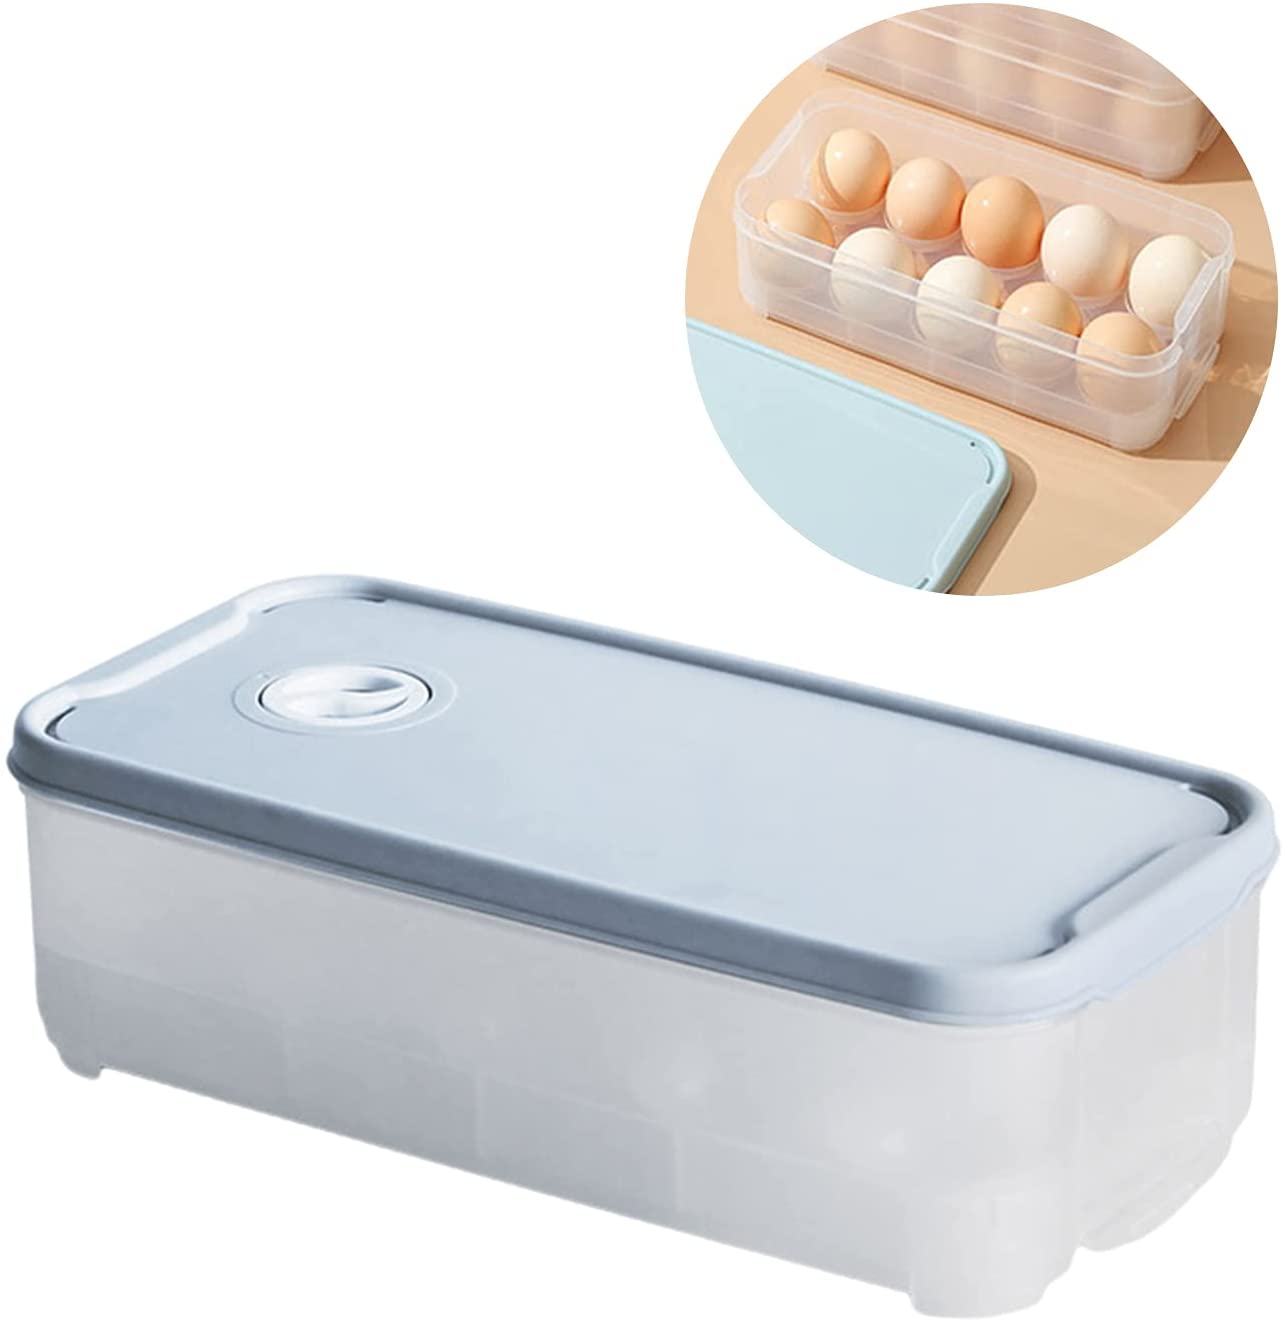 卵収納箱 冷蔵庫用 エッグホルダー 半透明 冷蔵庫用 卵ボックス エッグホルダー キッチンエッグ収納ボックス 10個収納 ファッションデザイン